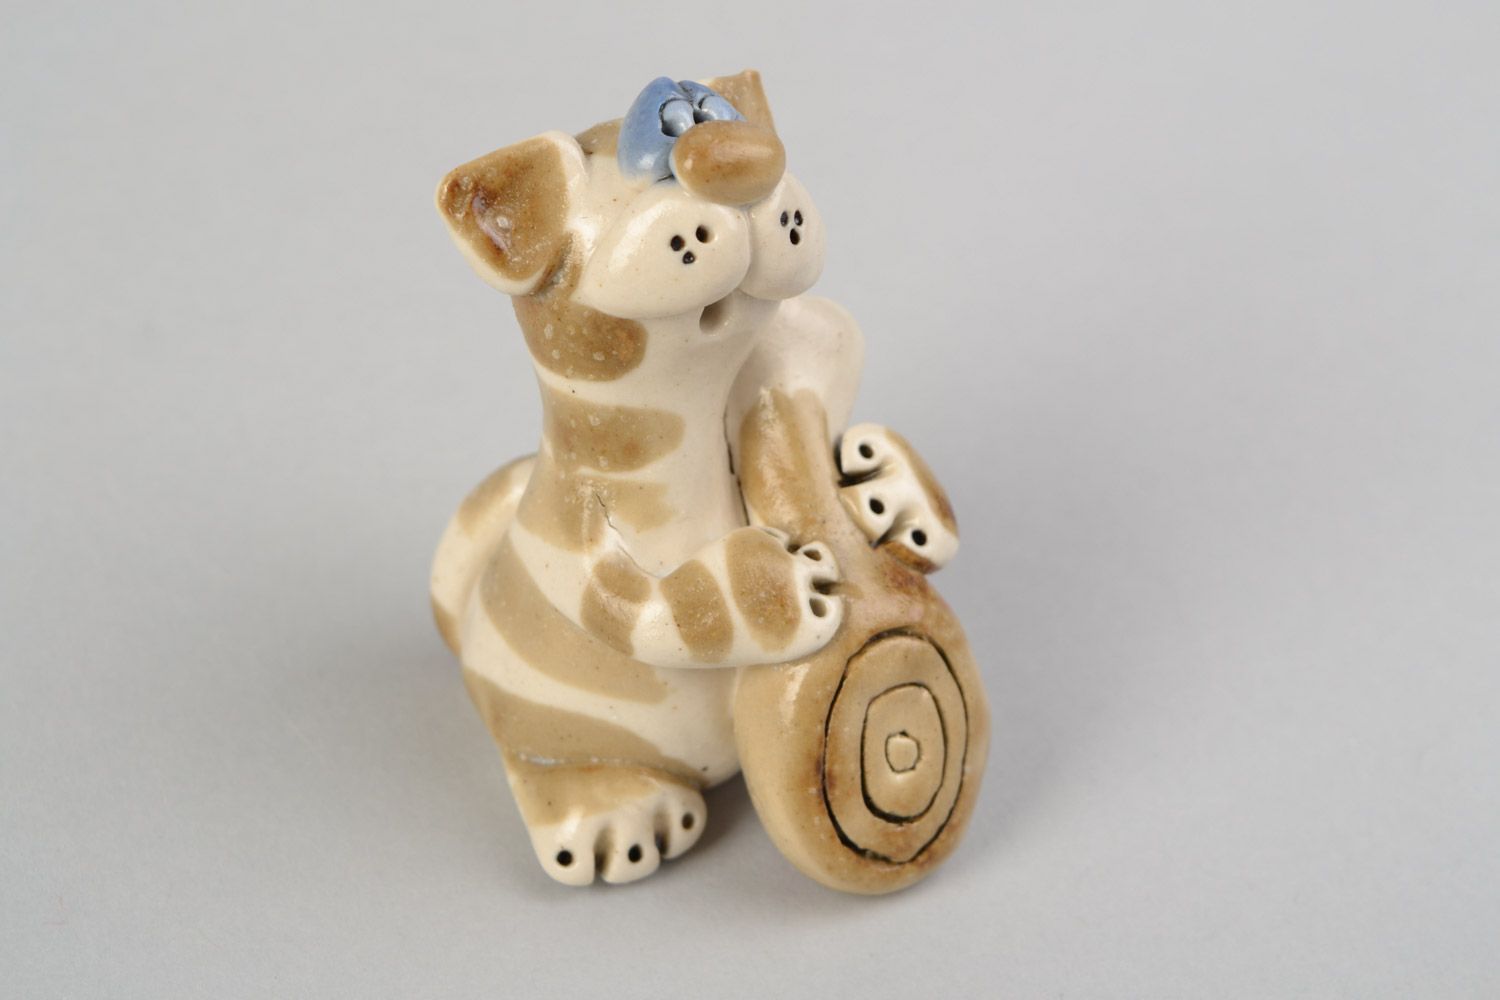 Фигурка из глины кот с росписью смешная для подарка декоративная ручной работы фото 1